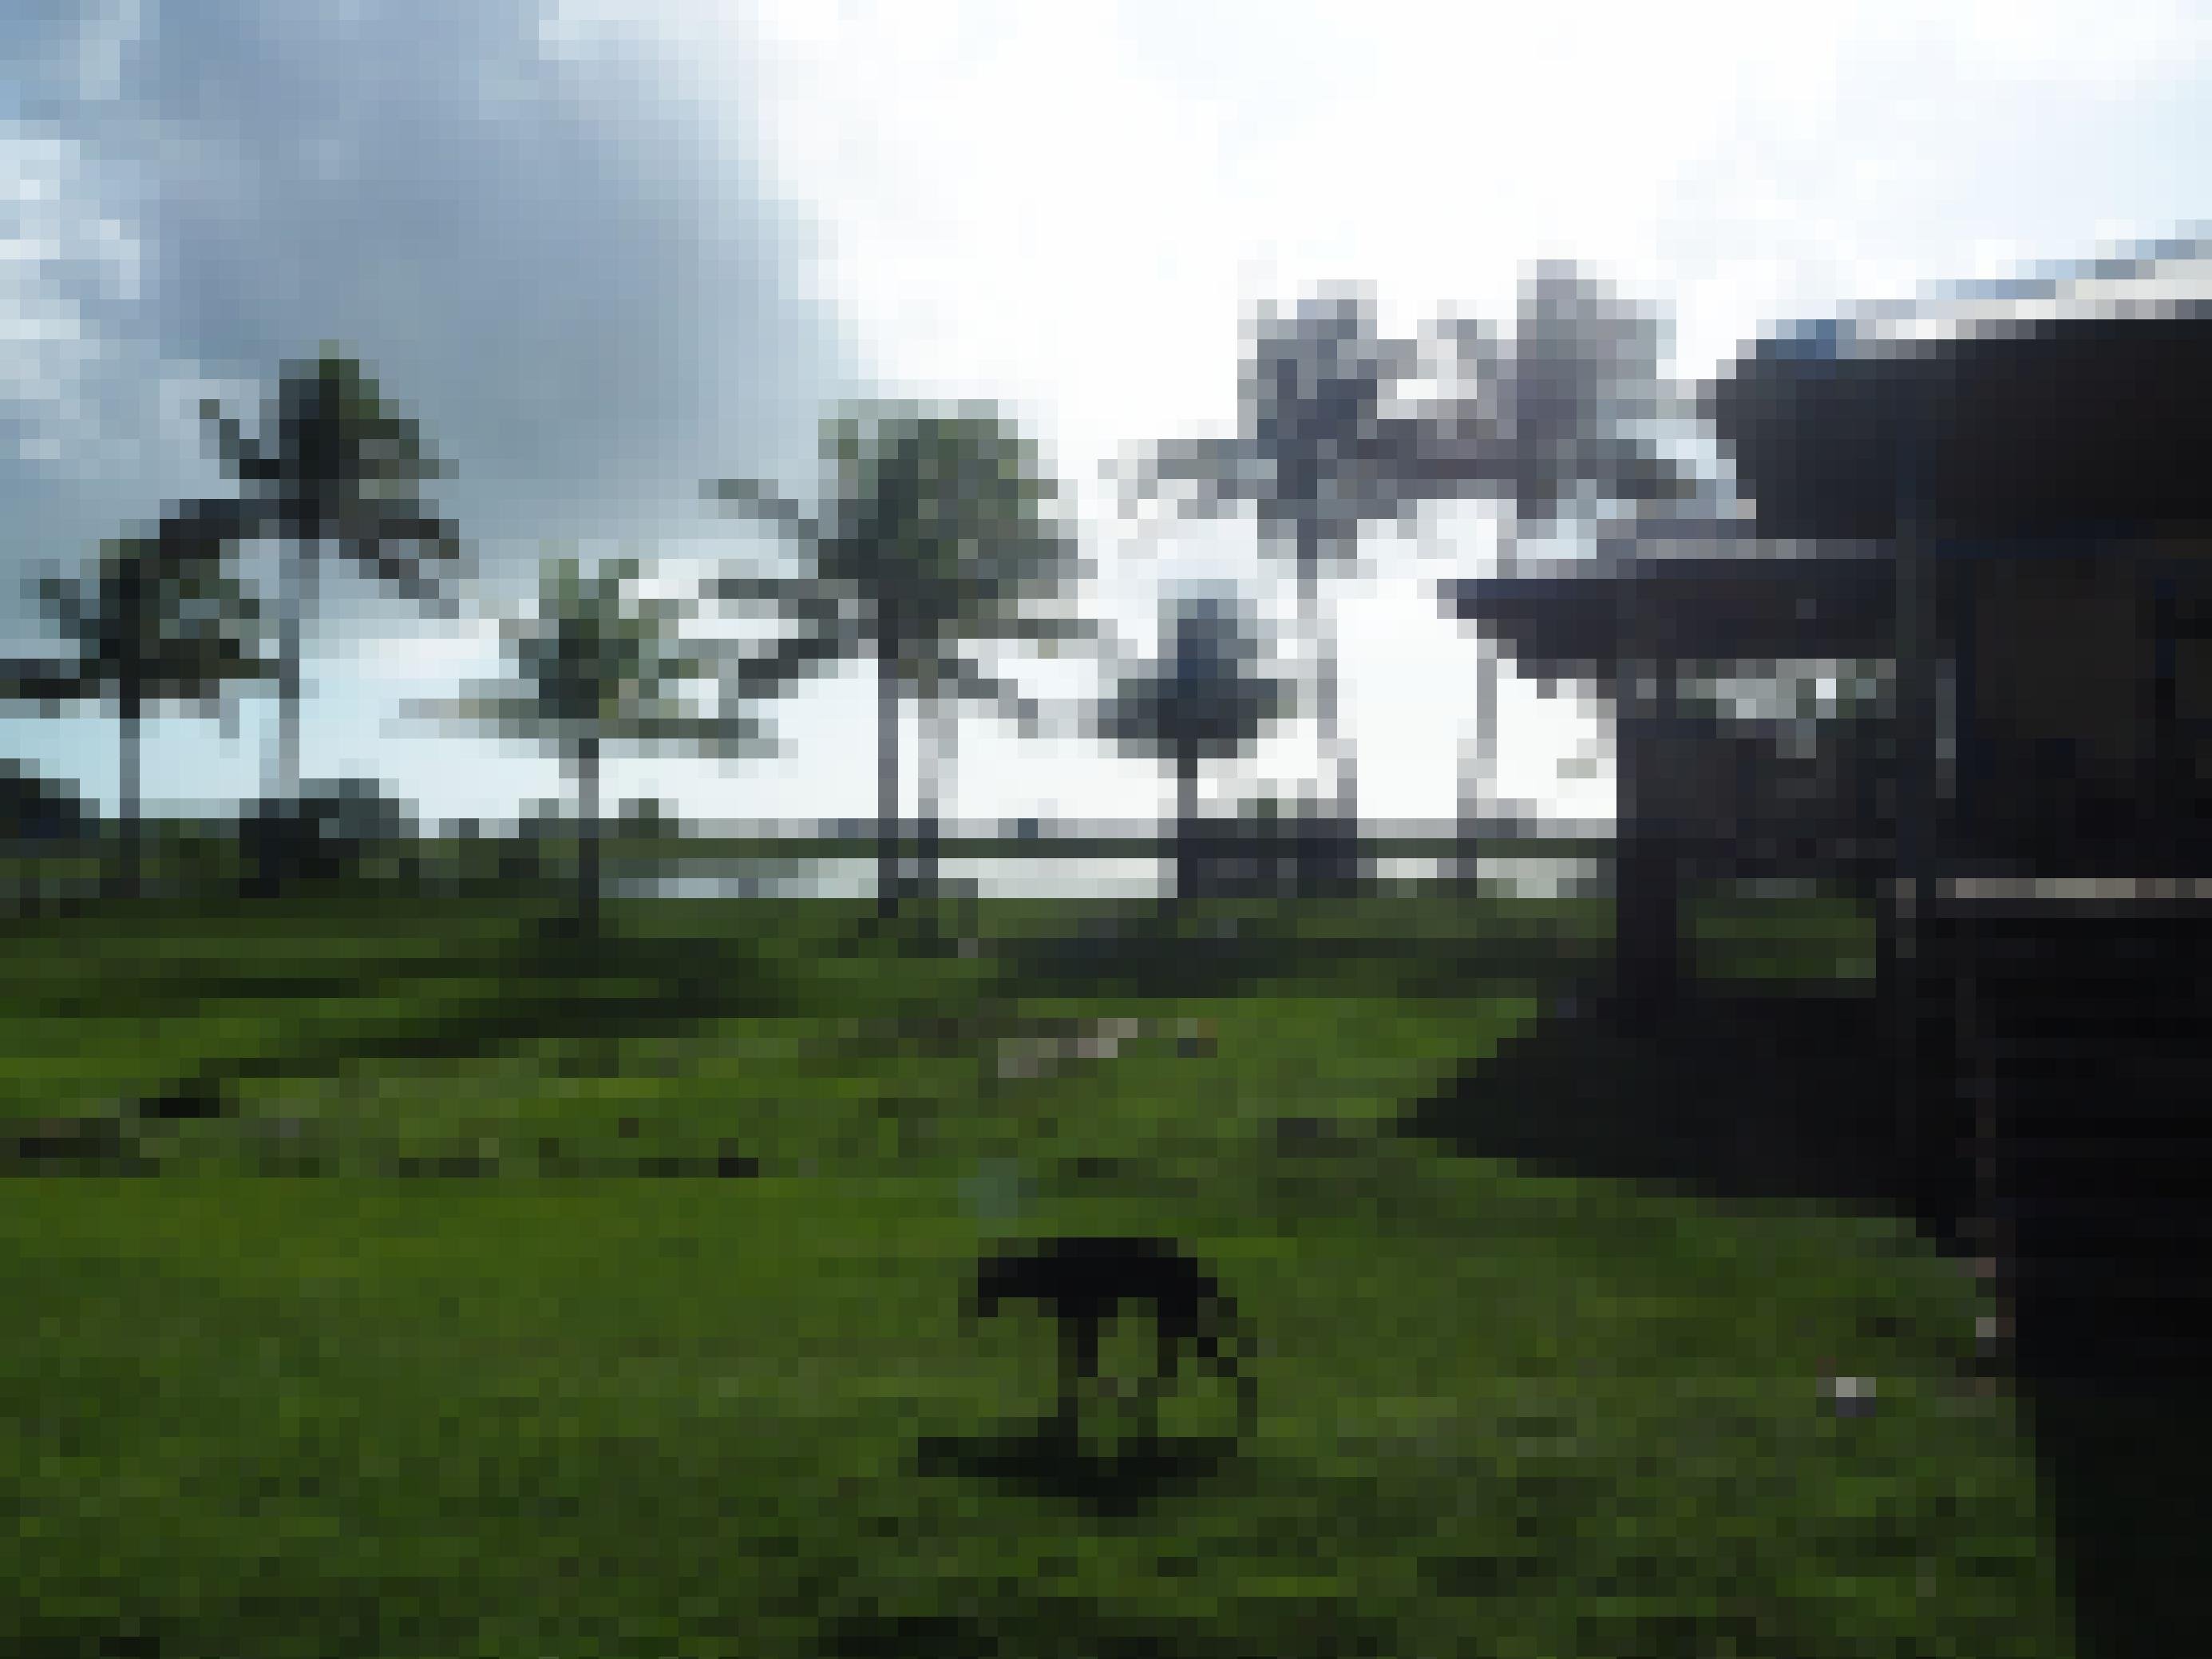 Ein abgemagerter Hund läuft durch das Bild, in dessen Hintergrund ein Holzhaus auf Pfählen steht, dahinter Palmen und Meer.